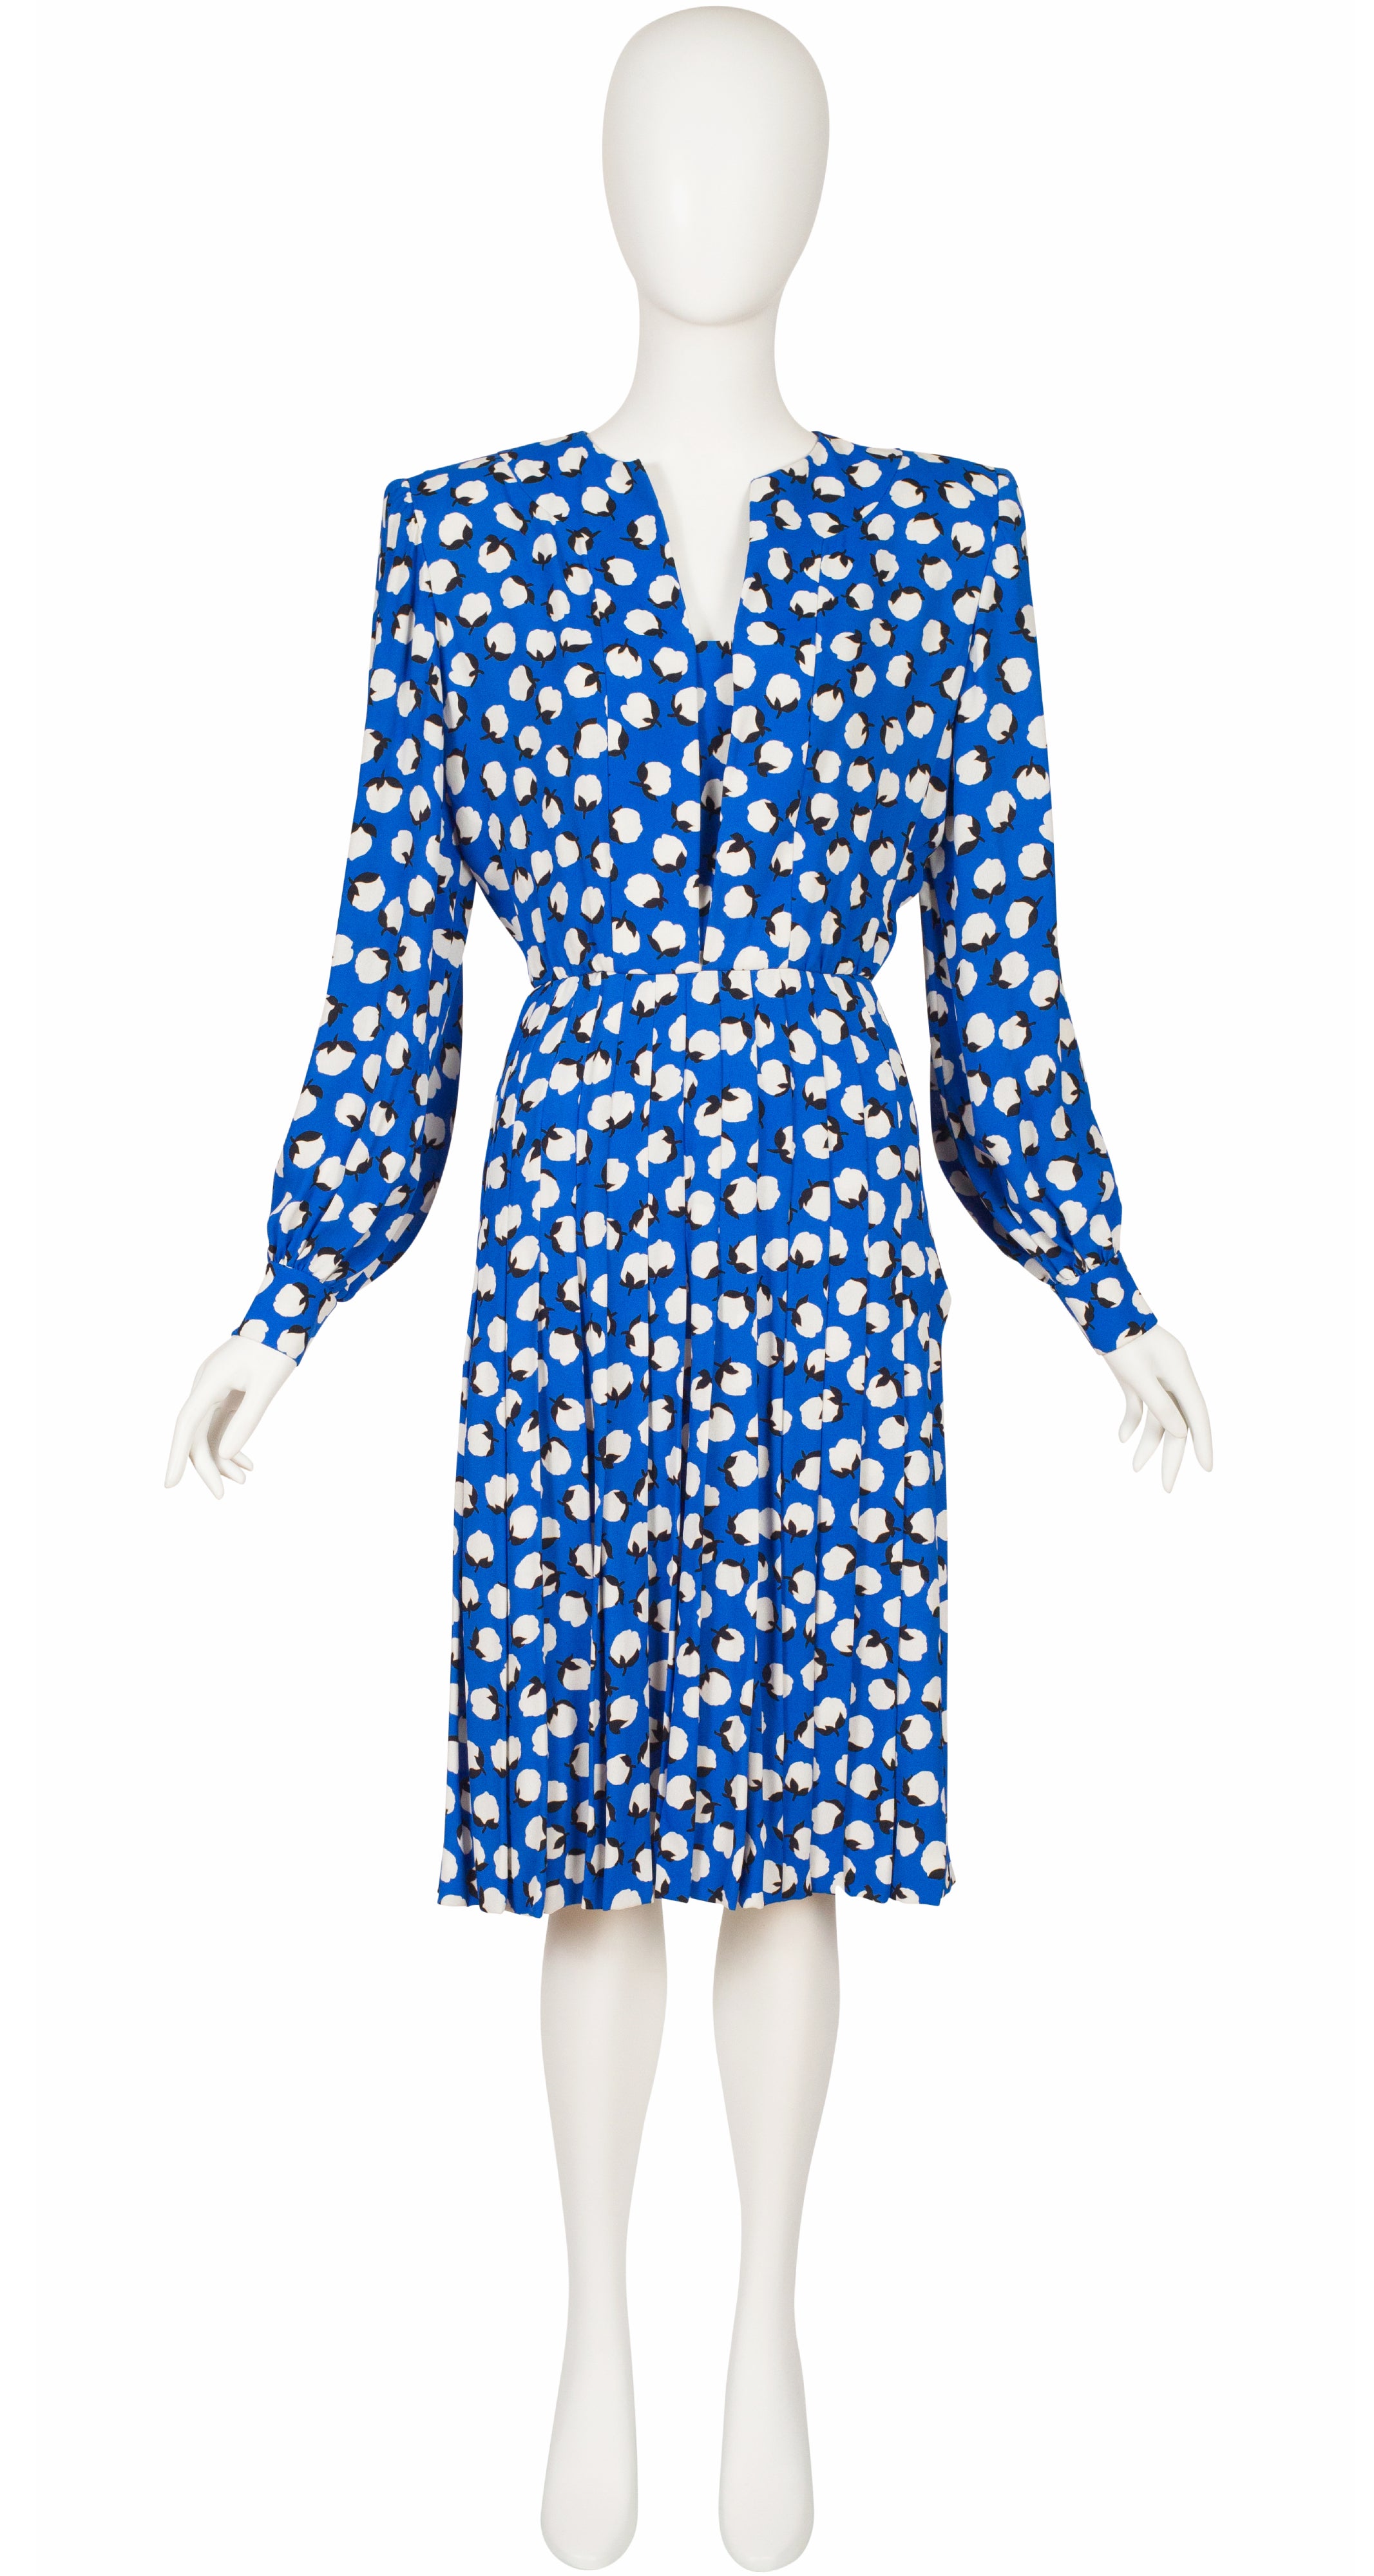 1980s Flower Bud Print Blue Crepe Pleated Dress